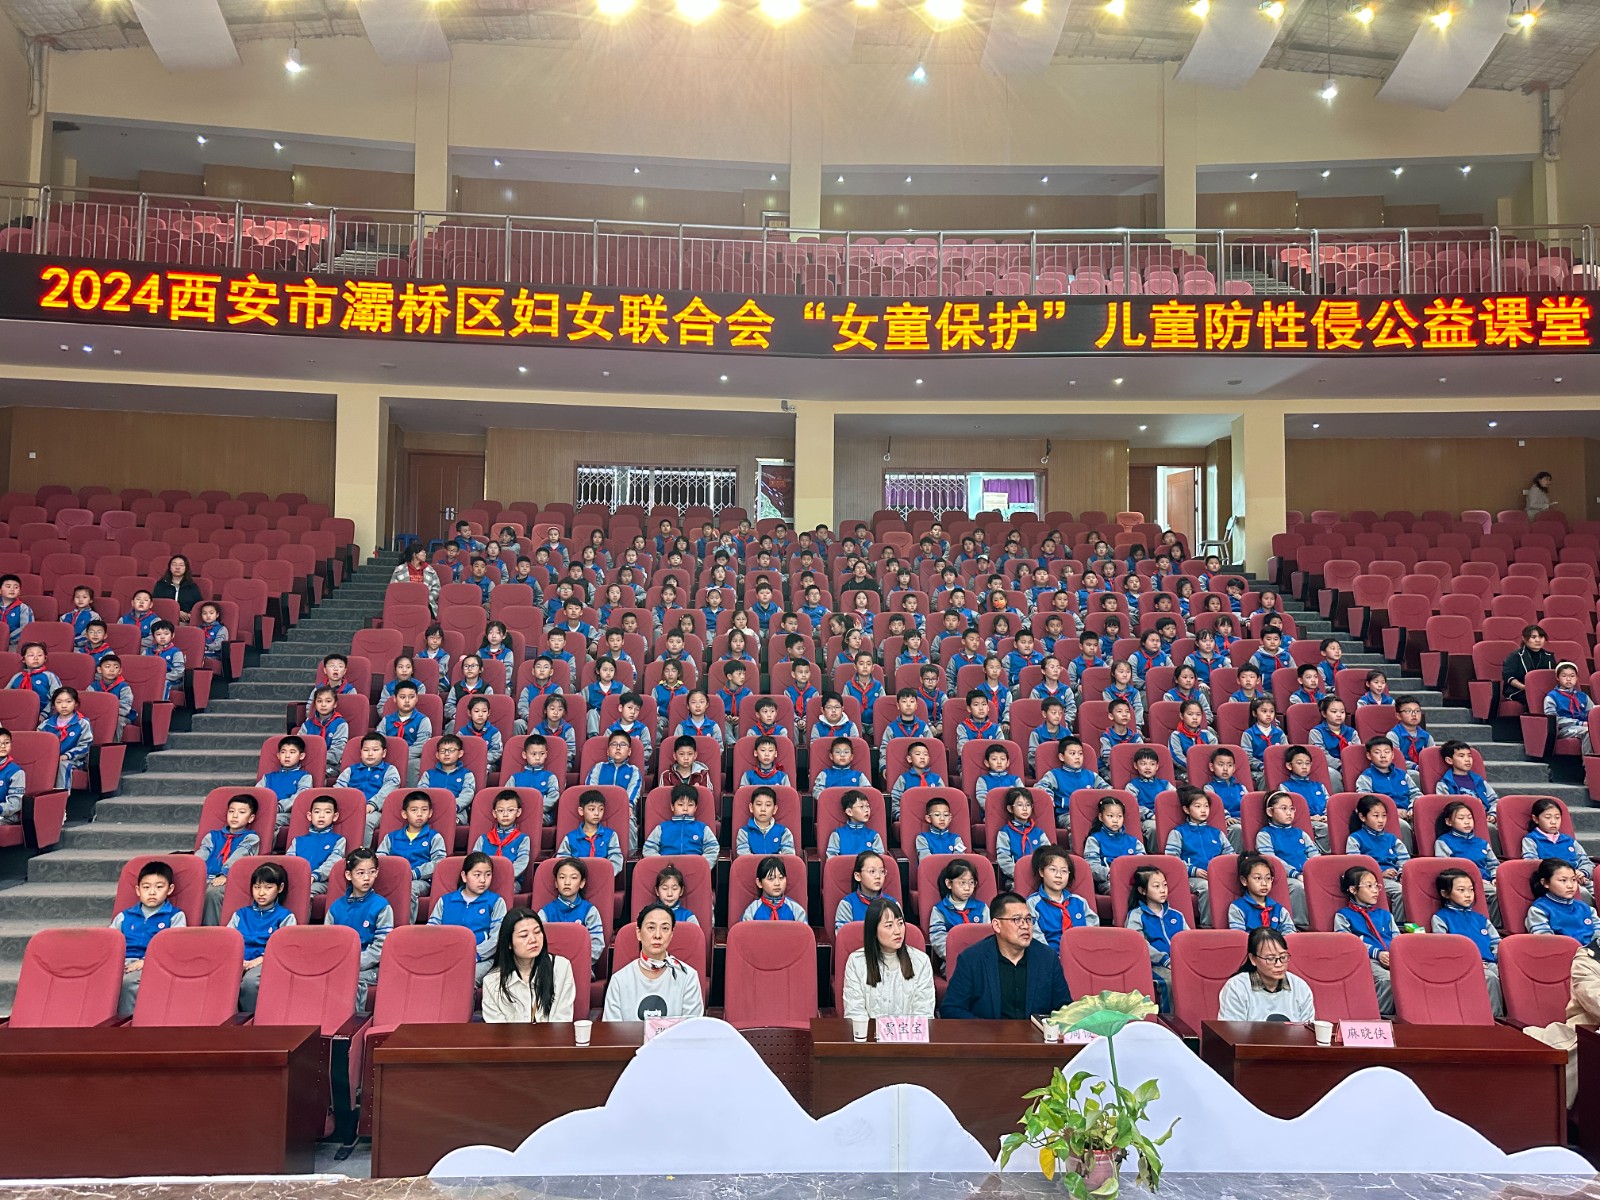 陕西省西安市灞桥区妇联组织开展 “女童保护”知识讲座